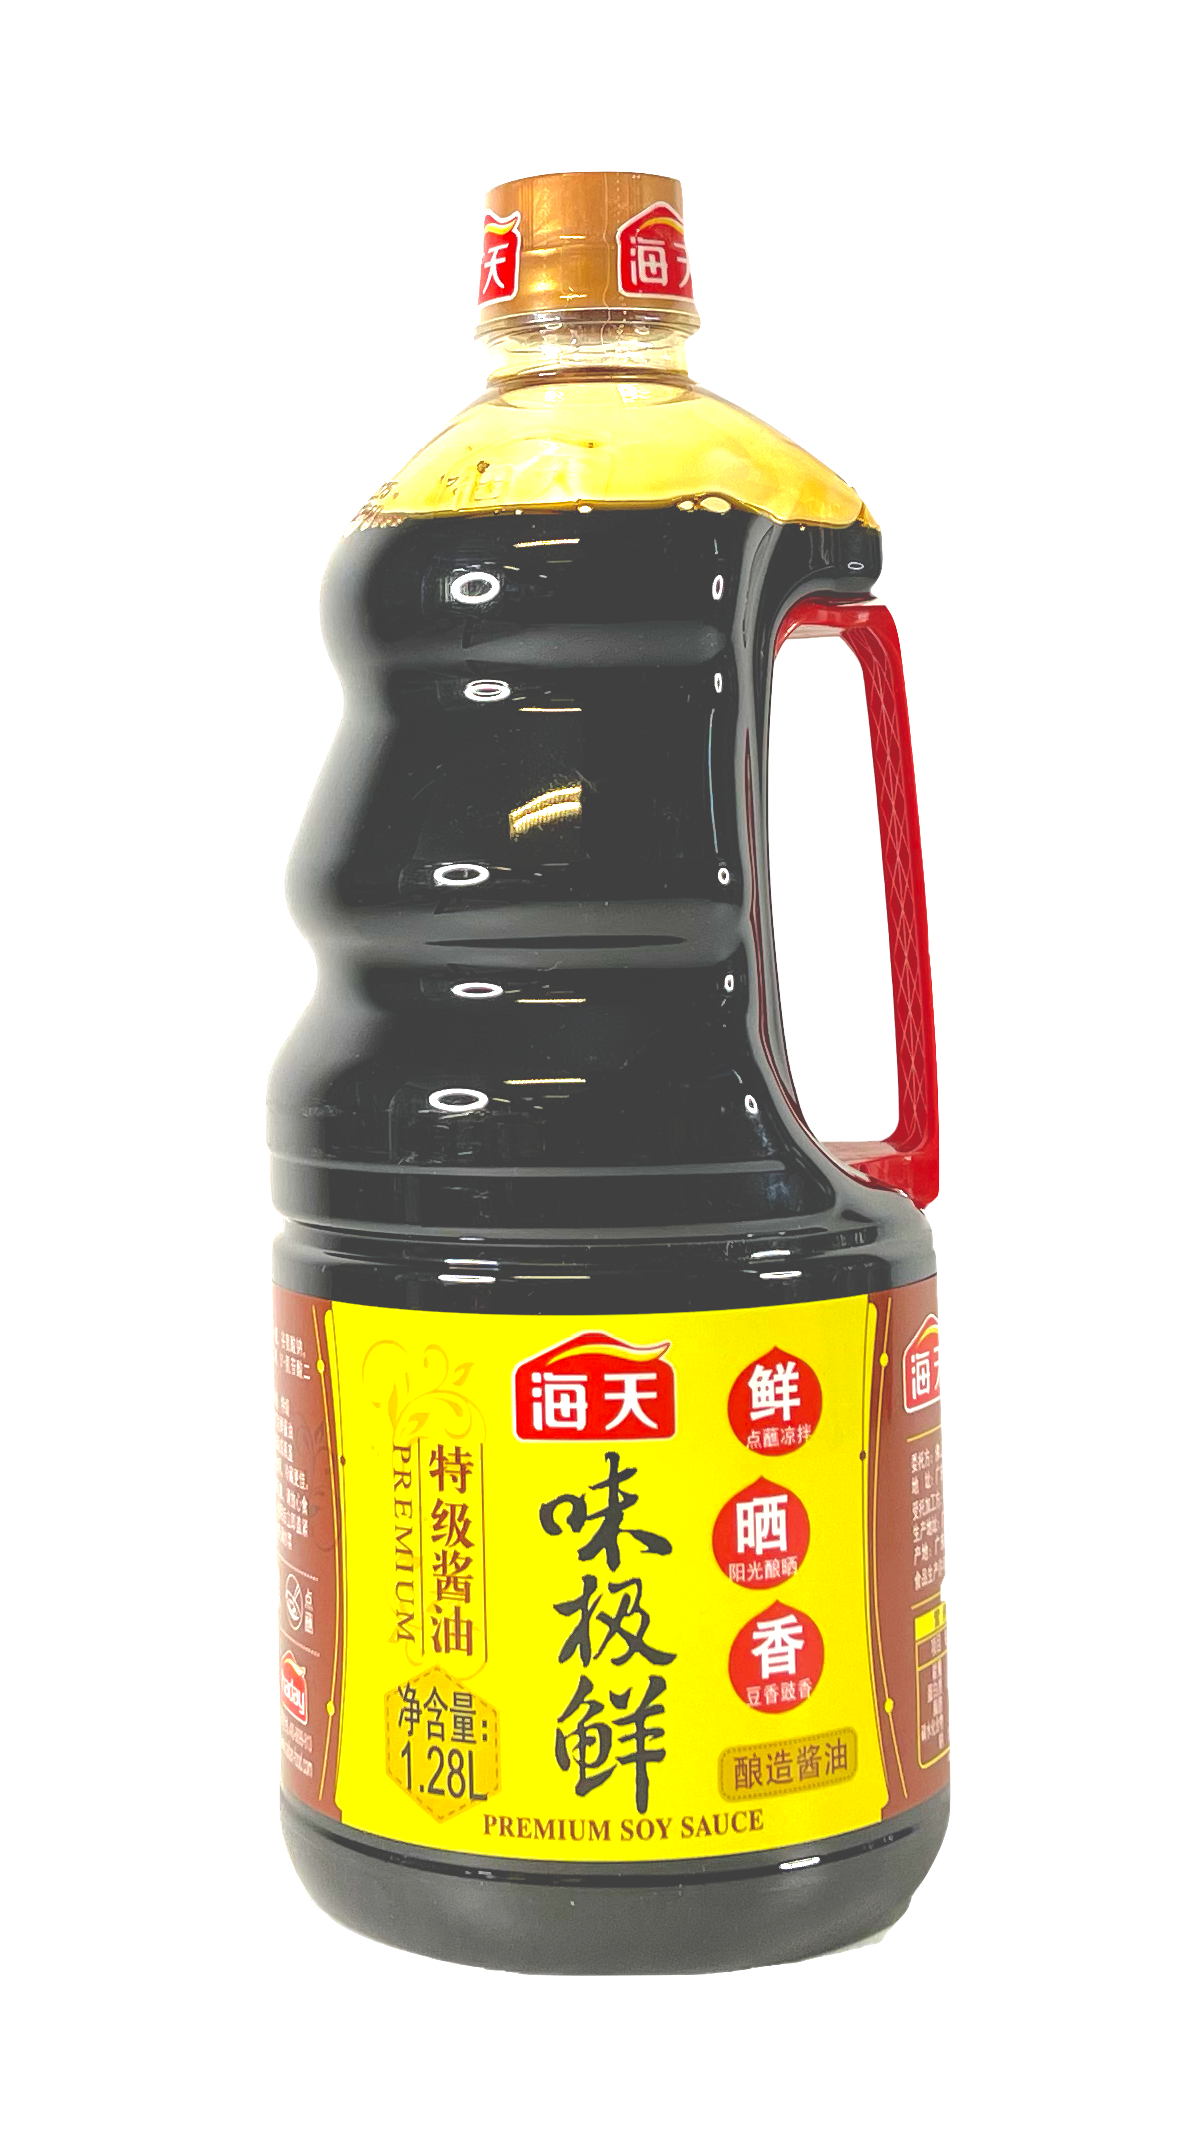 海天 味极鲜 特级酱油 1.28L 中国